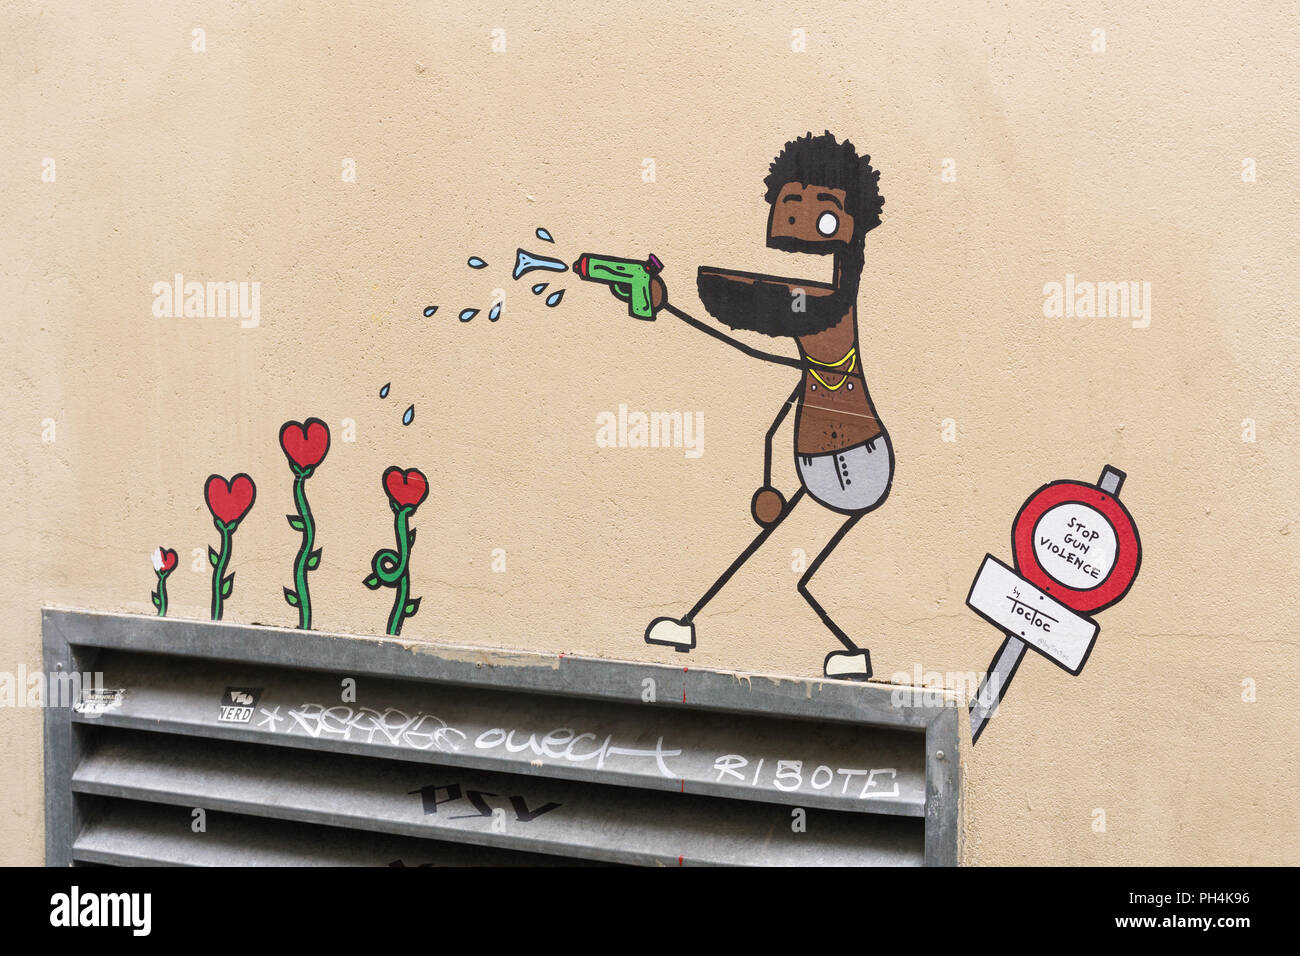 Arrêter la violence par arme à feu - street art à Paris, France. Banque D'Images